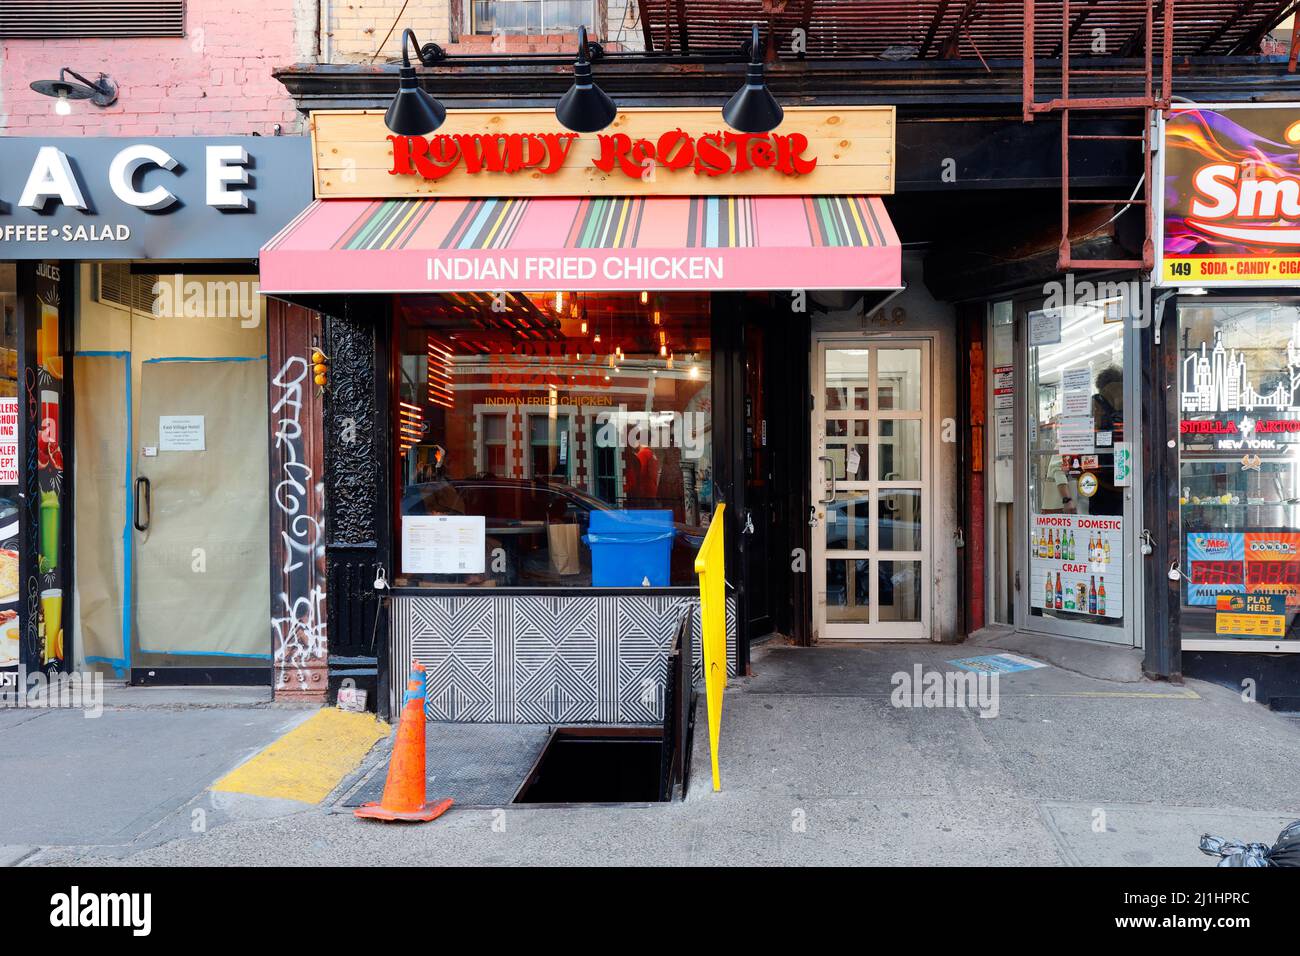 Rowdy Rooster, 149 1st Ave., New York, foto del negozio di un ristorante indiano di pollo fritto nell'East Village di Manhattan. Foto Stock